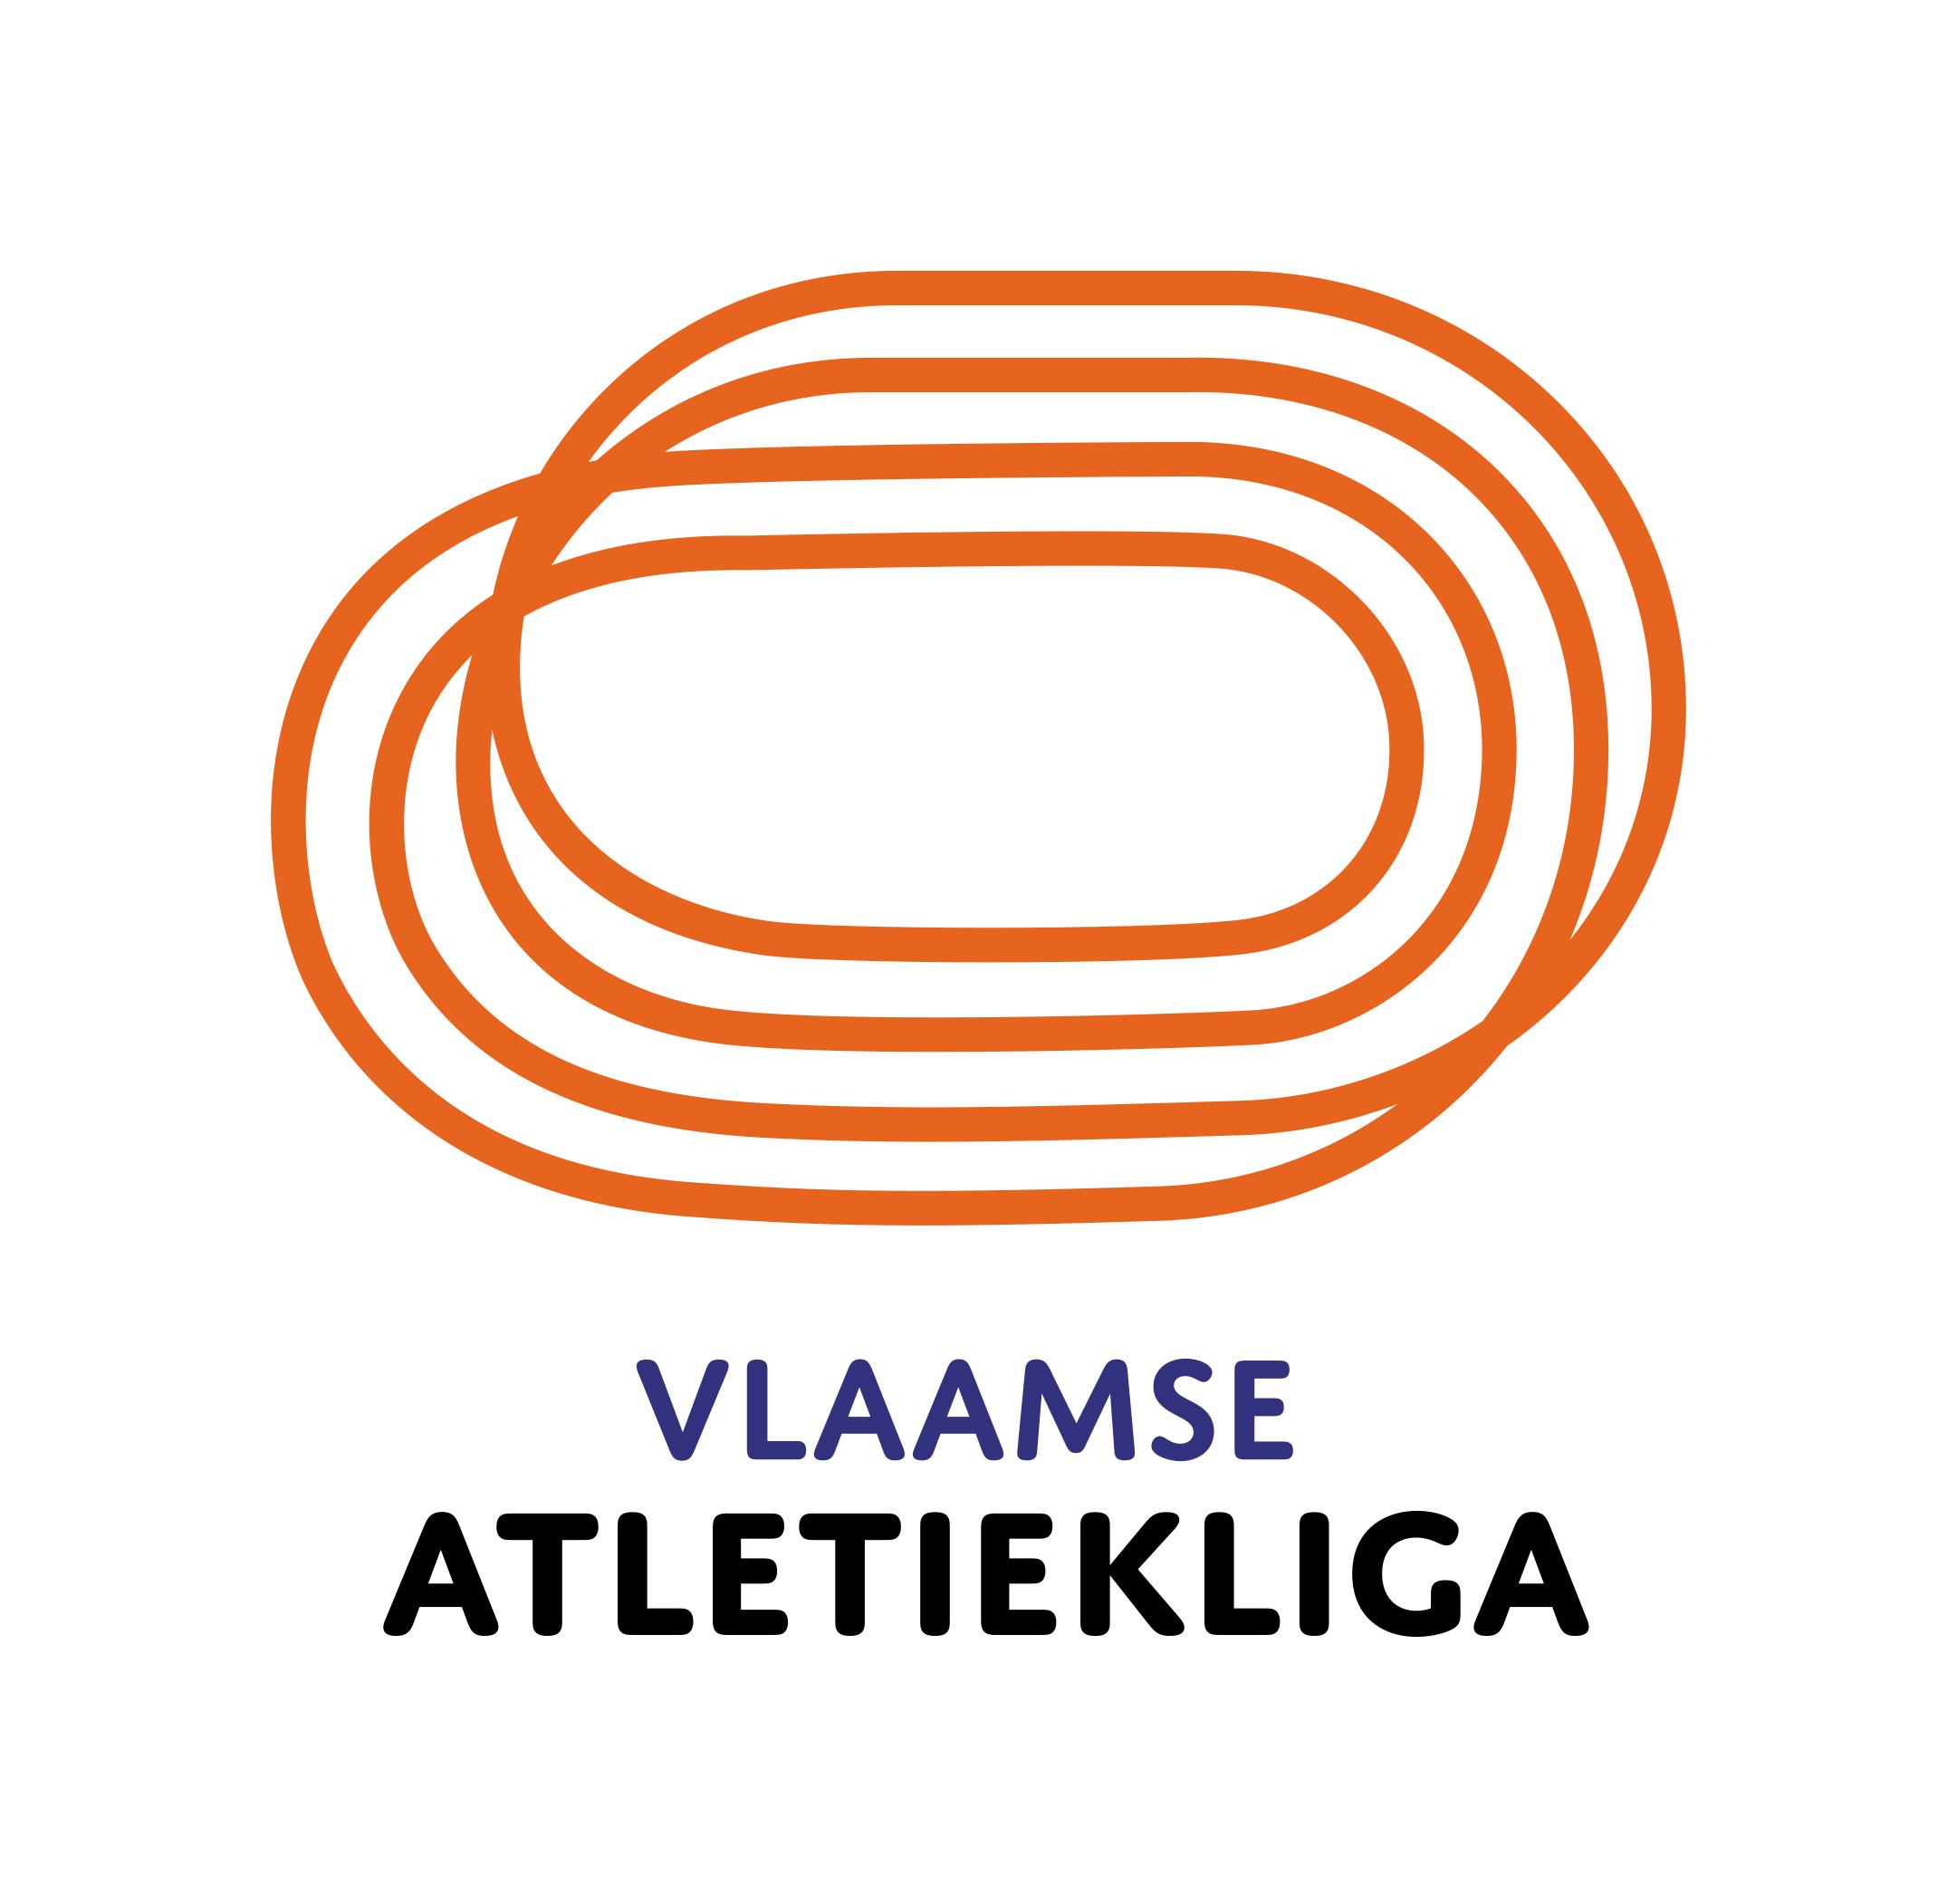 Topsportcommissie Vlaamse Atletiekliga - Vlaamse Atletiekliga